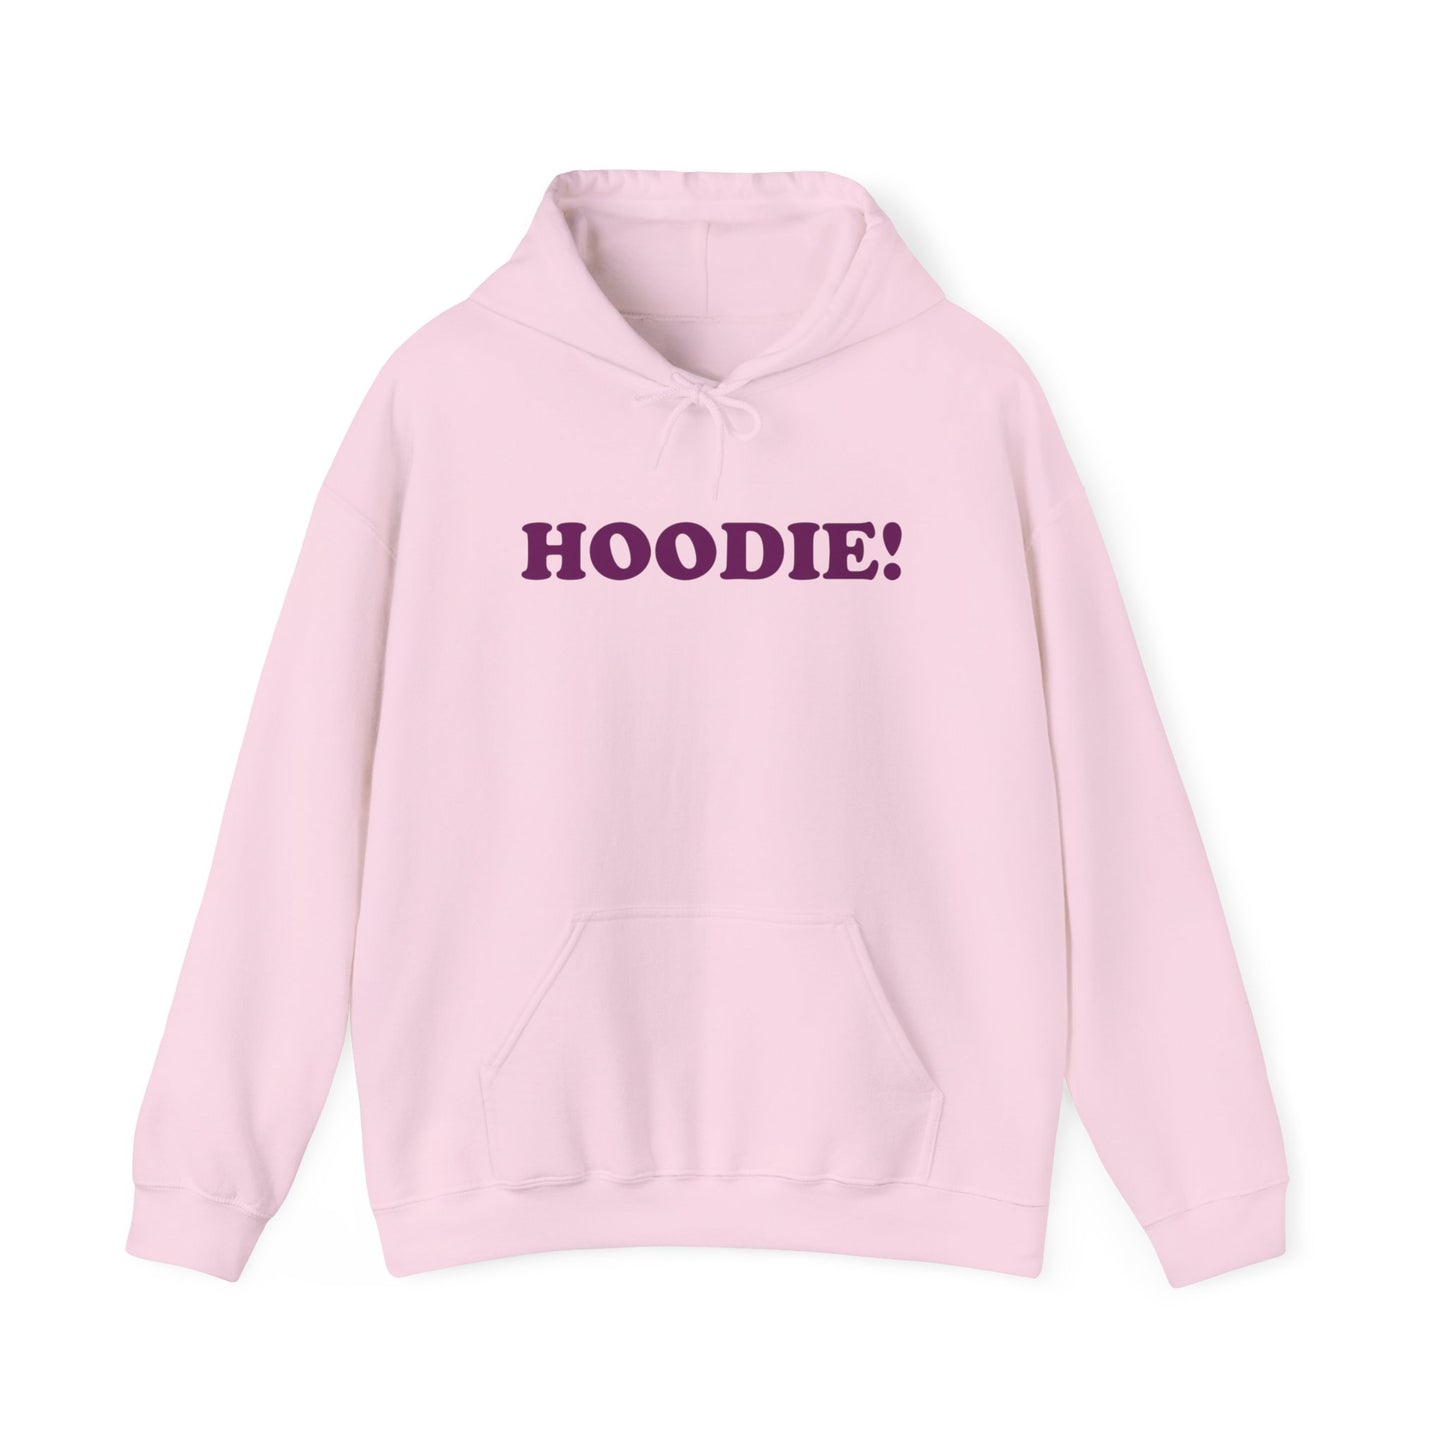 The Hoodie! Hoodie - Unisex Heavy Blend™ Hooded Sweatshirt